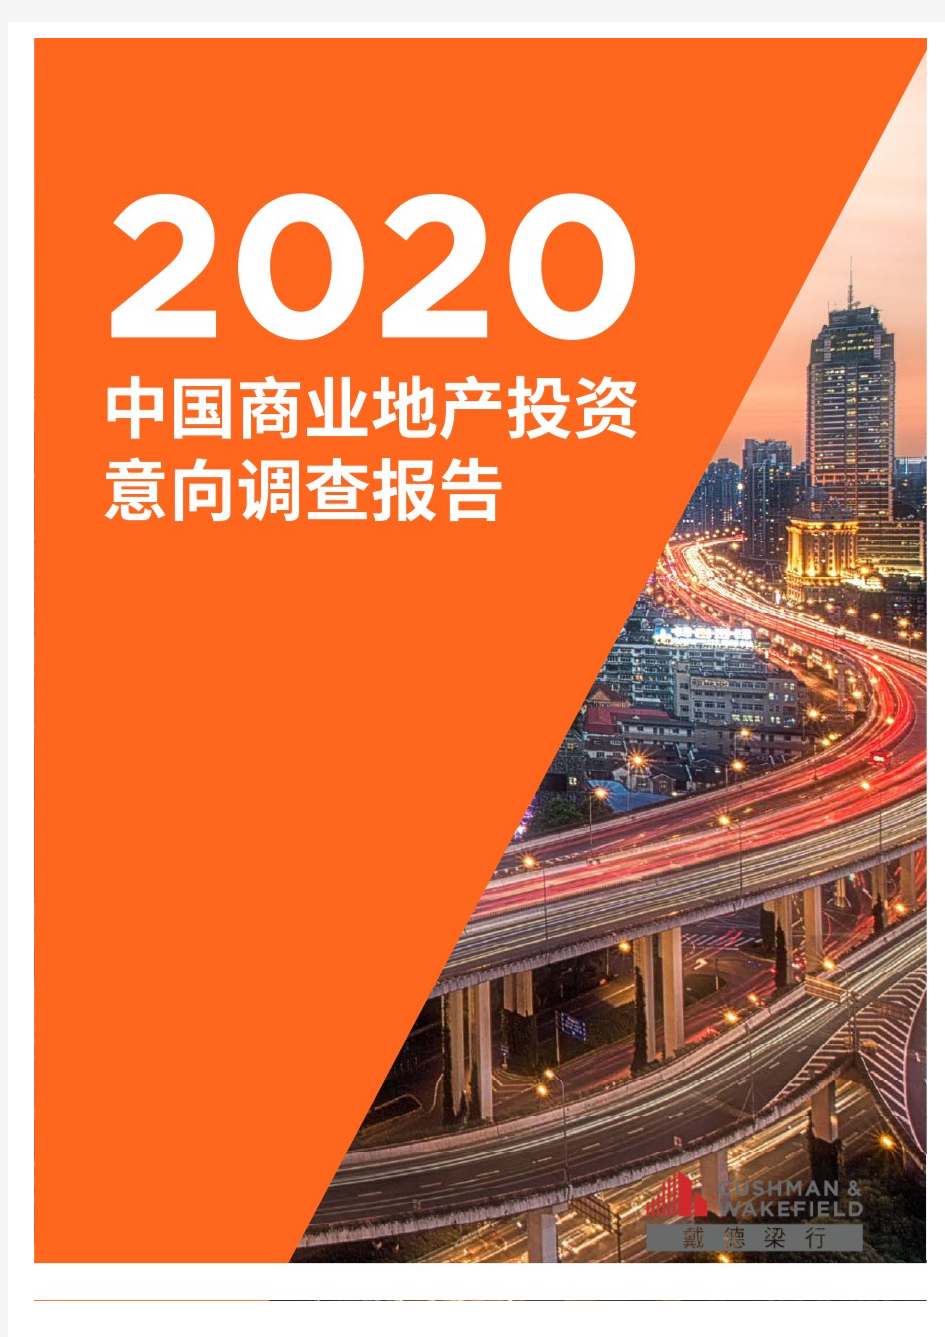 【精品报告】戴德梁行2020中国商业地产投资意向调查报告